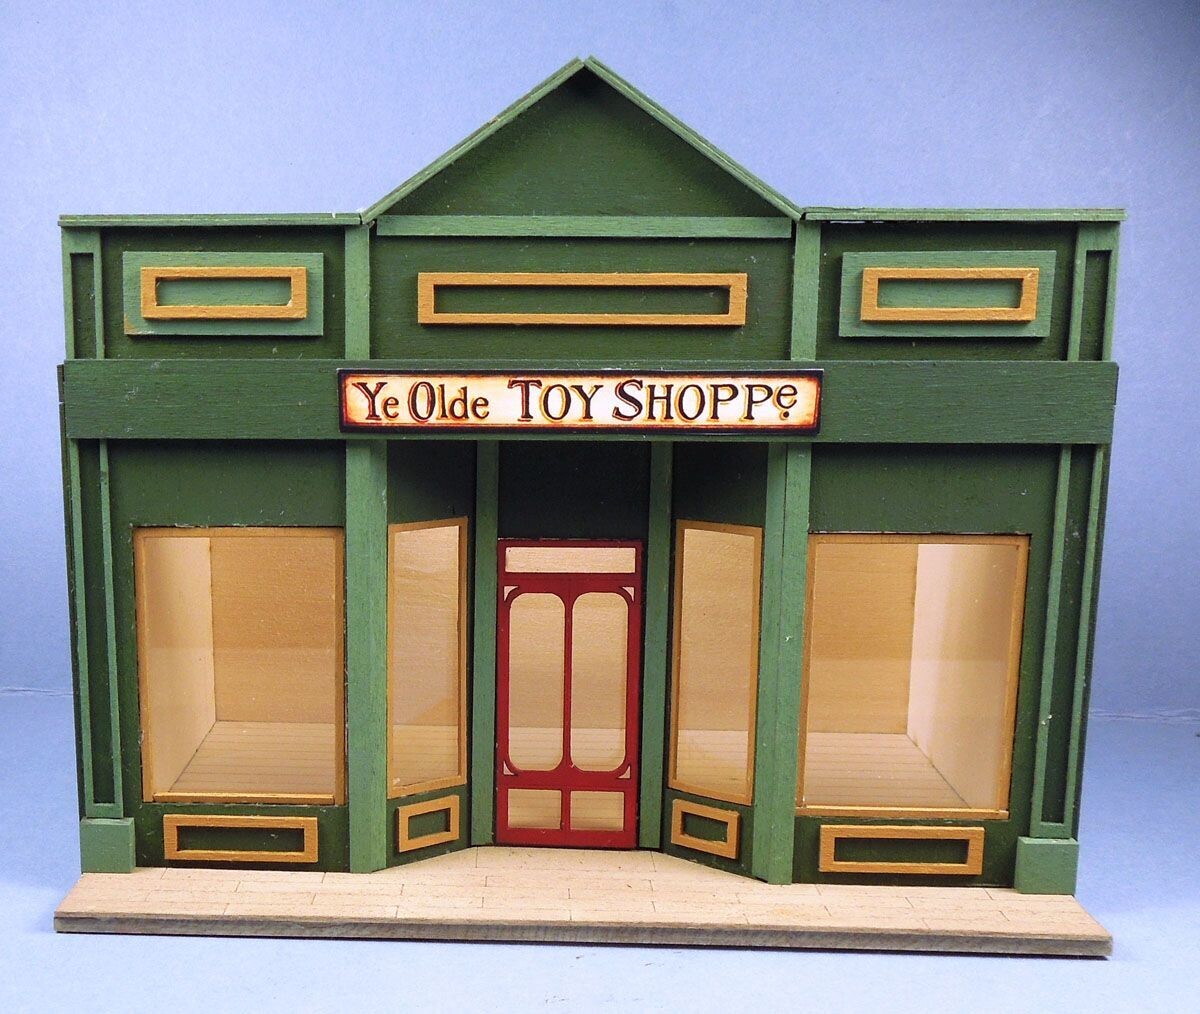 Ye Olde Toy Shoppe